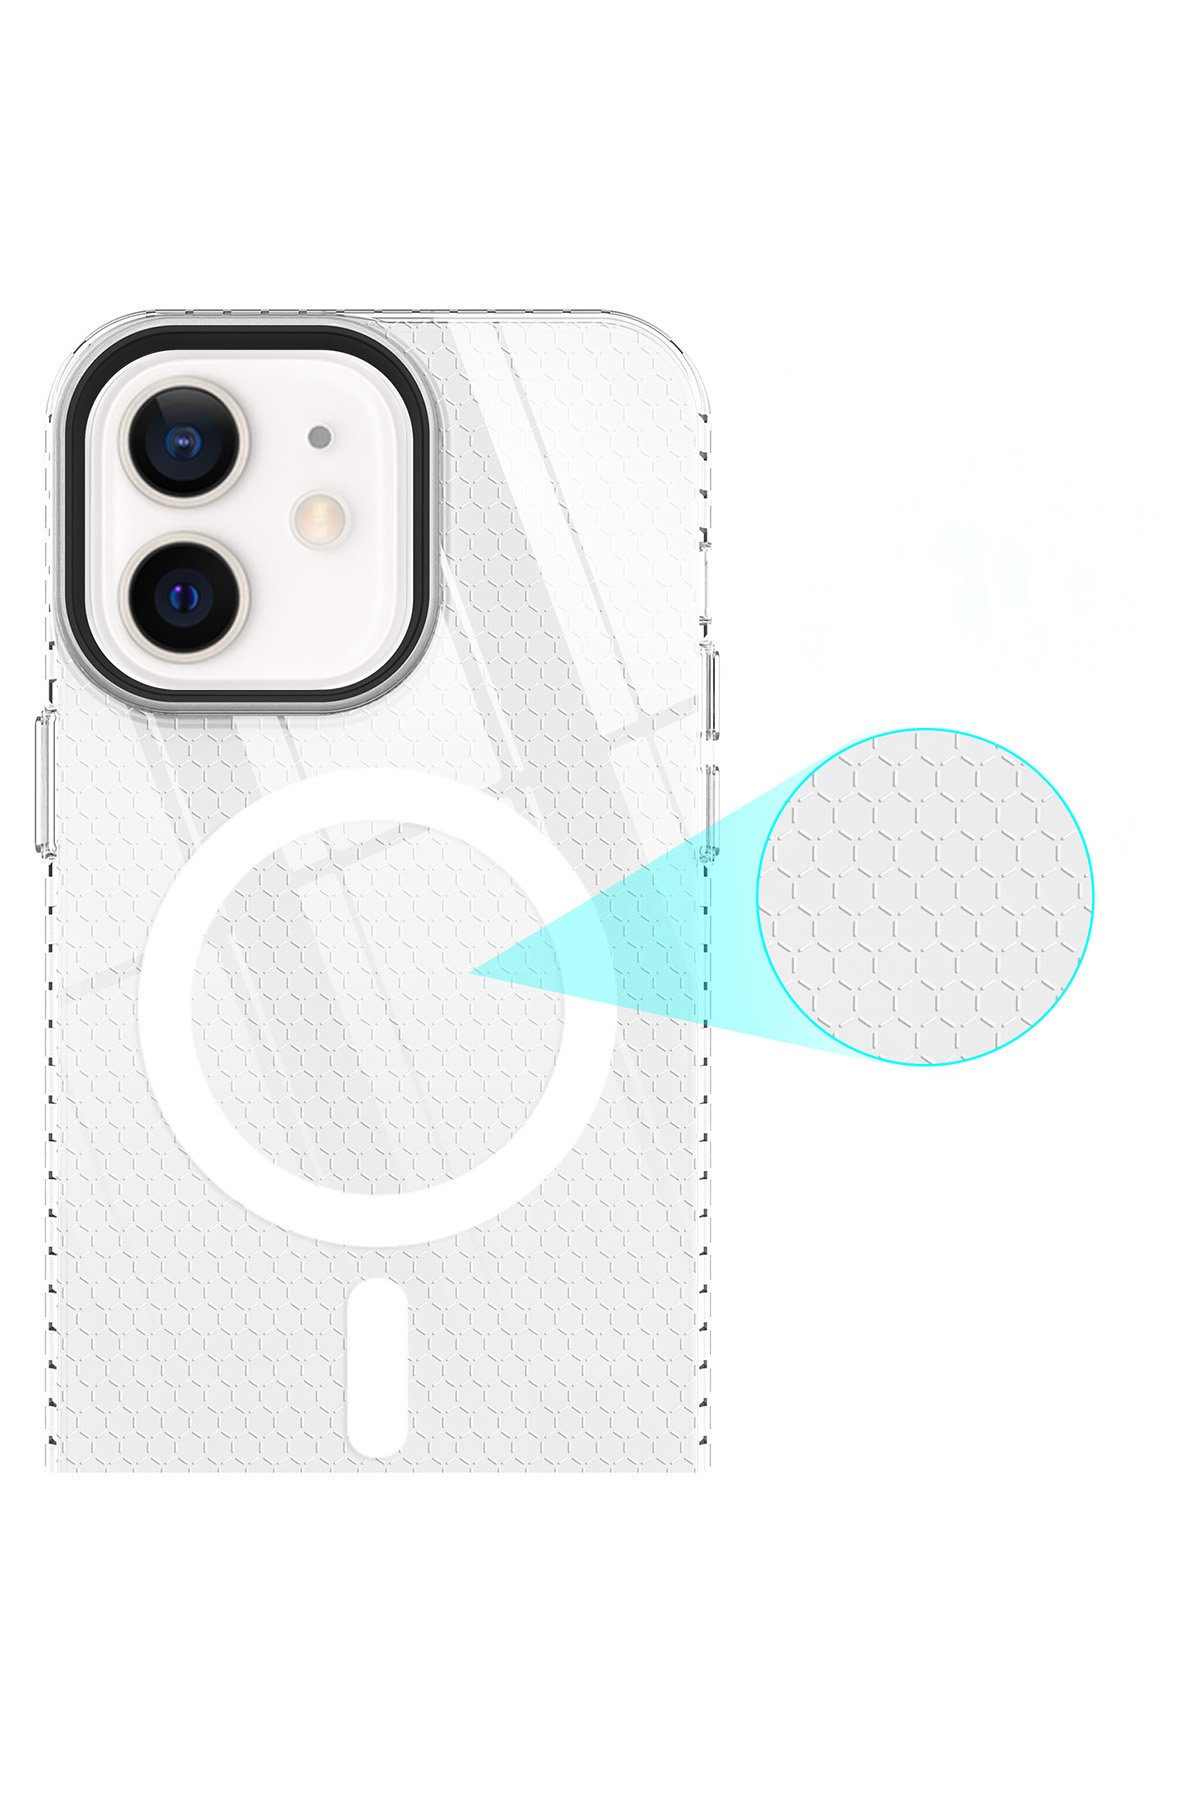 Newface iPhone 12 Kılıf Magneticsafe Lansman Silikon Kapak - Kırmızı